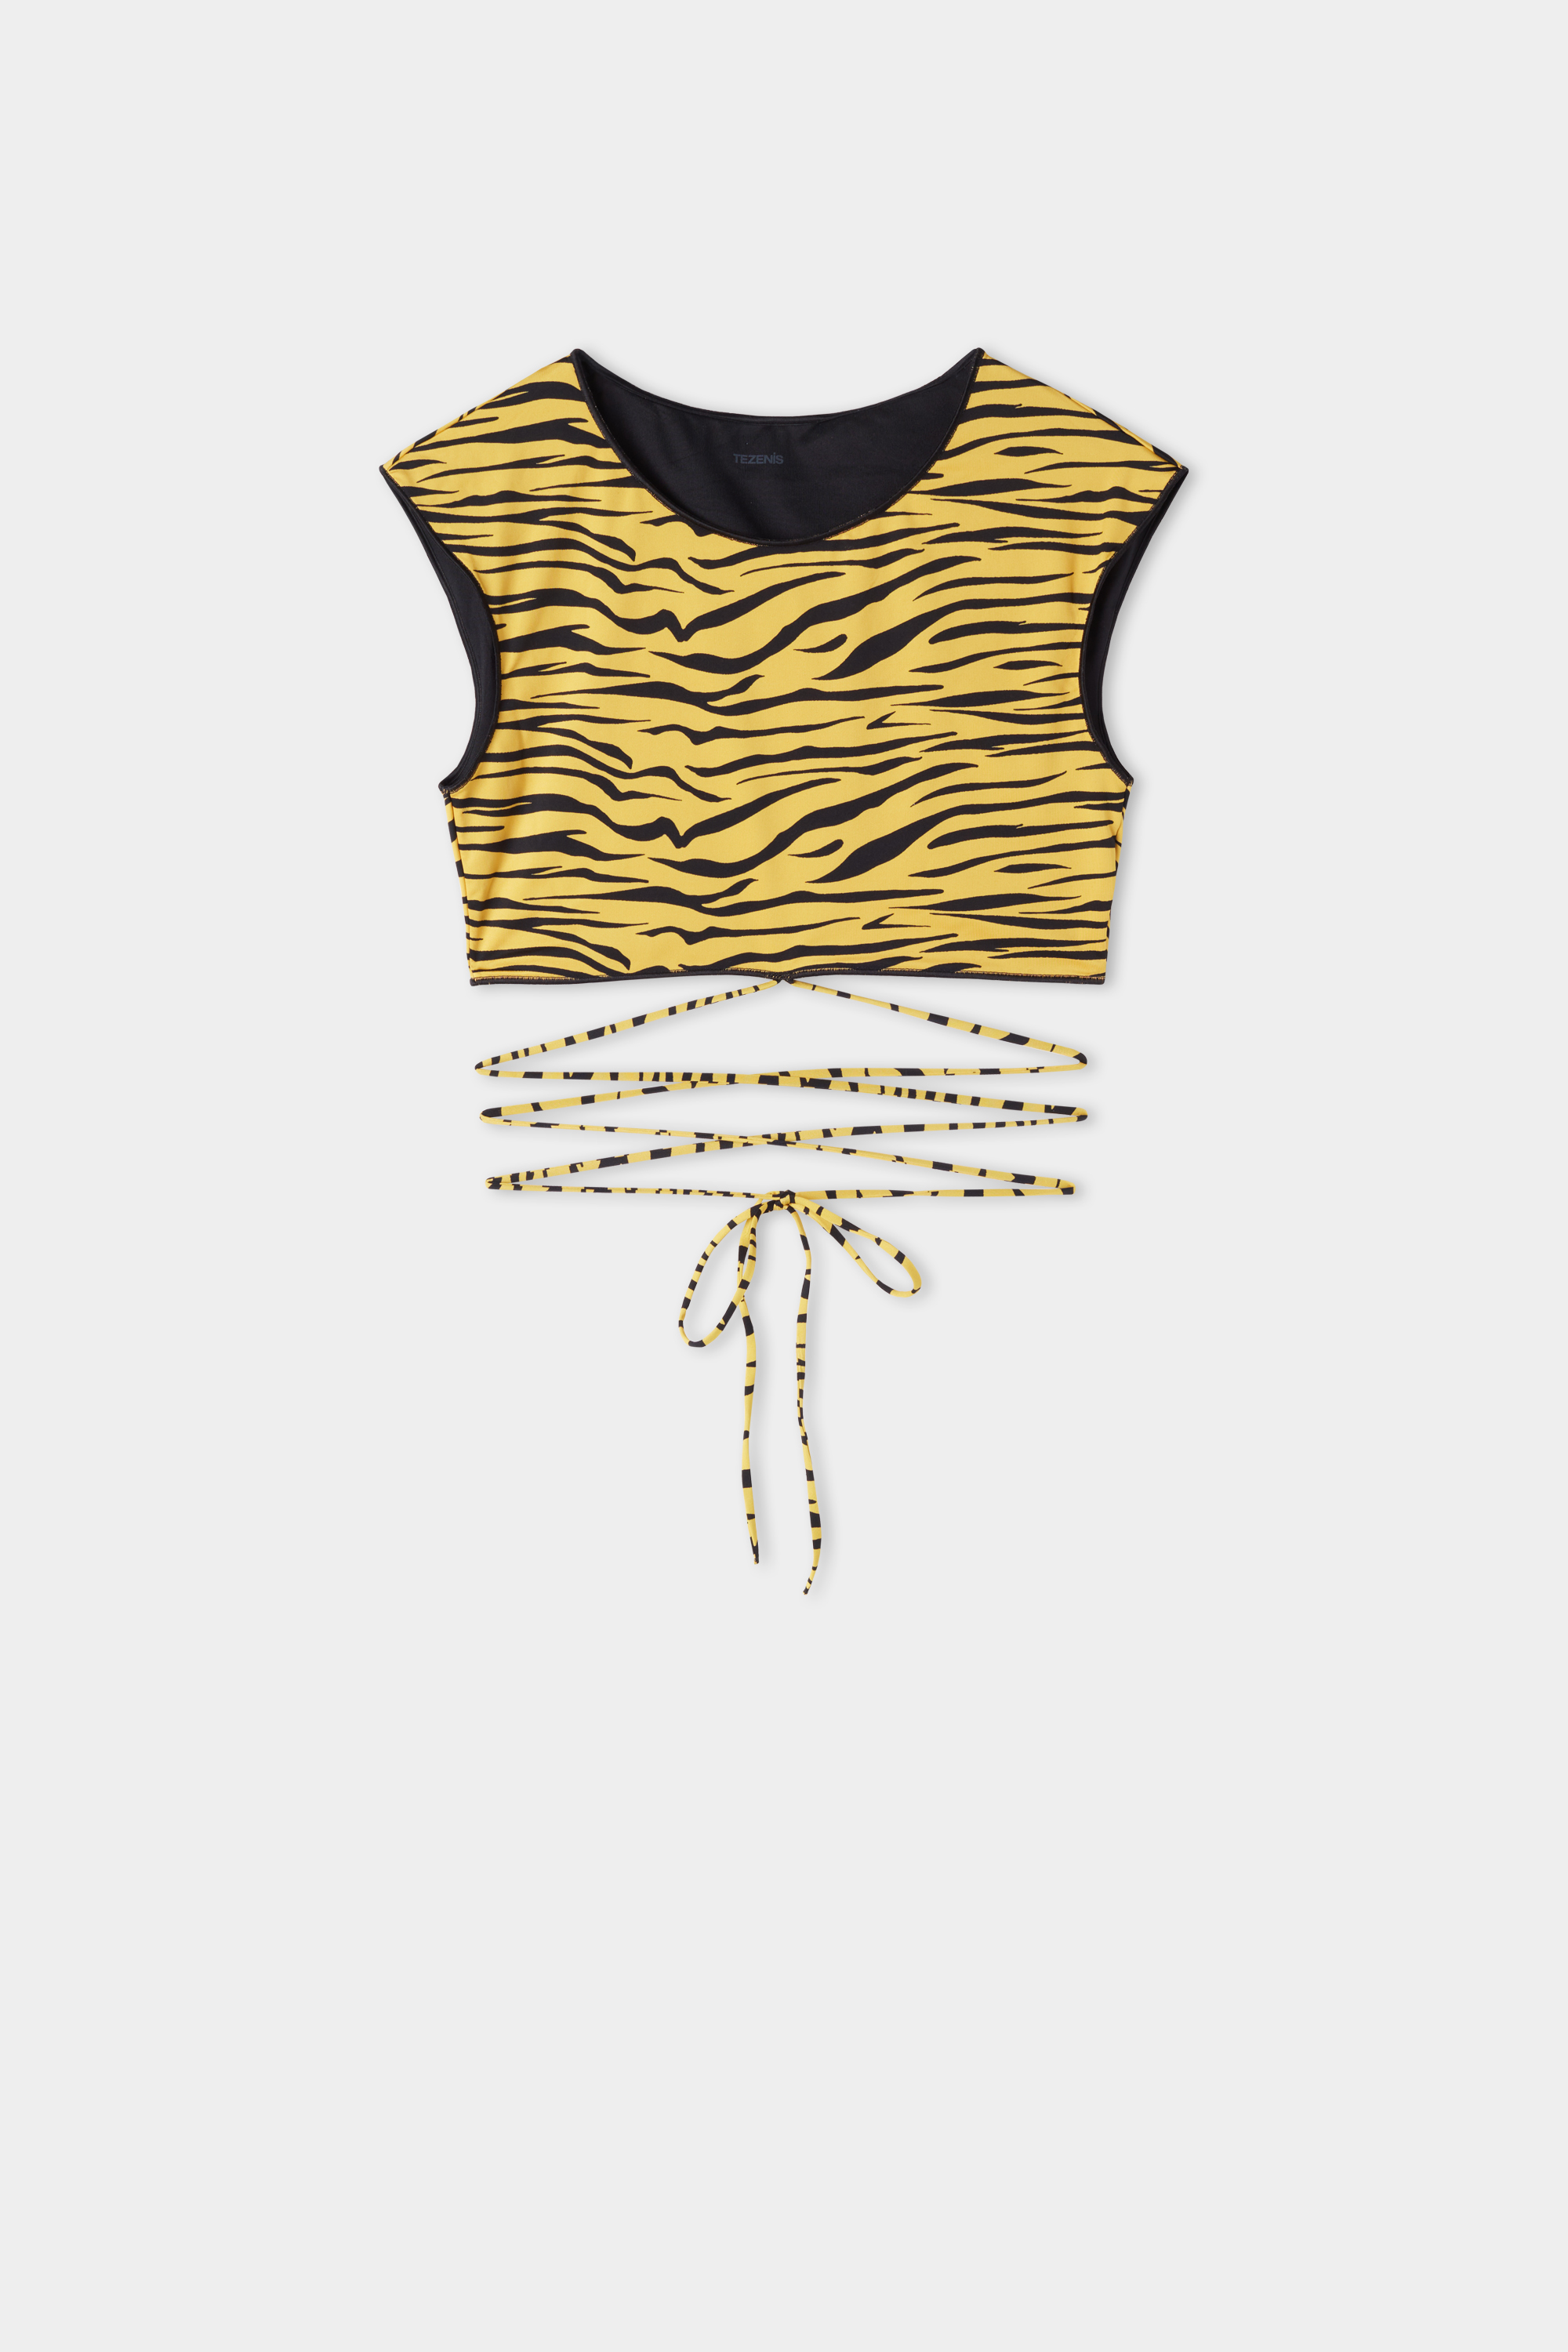 Bikini-Bra-Top Yellow Zebra